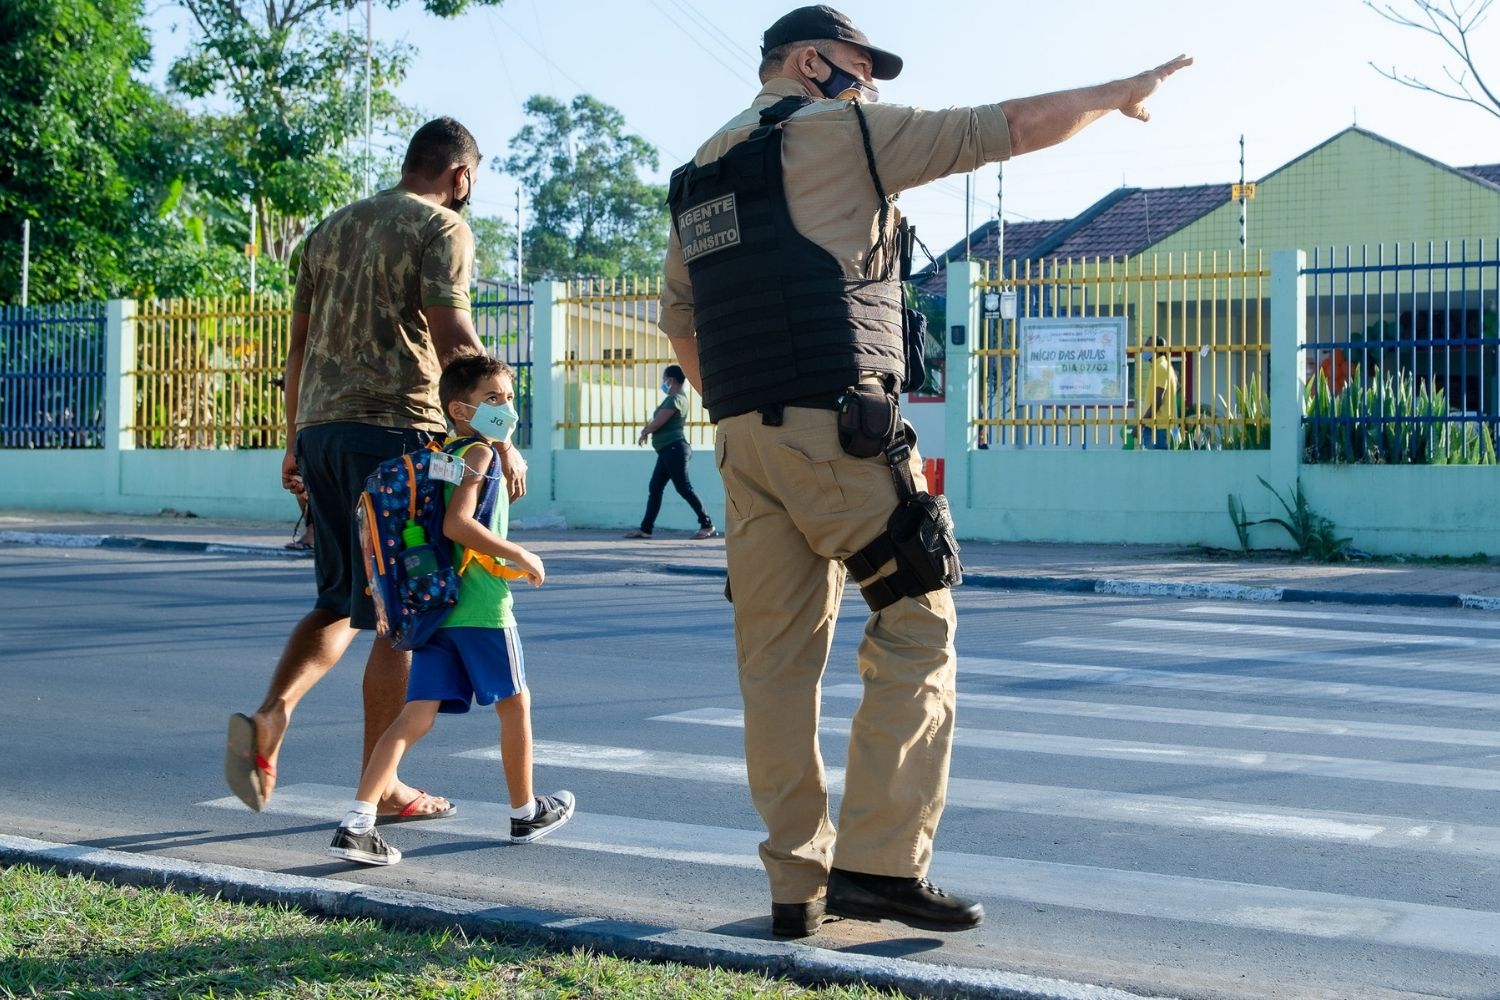 Policial acena para que pai atravesse a rua com seu filho